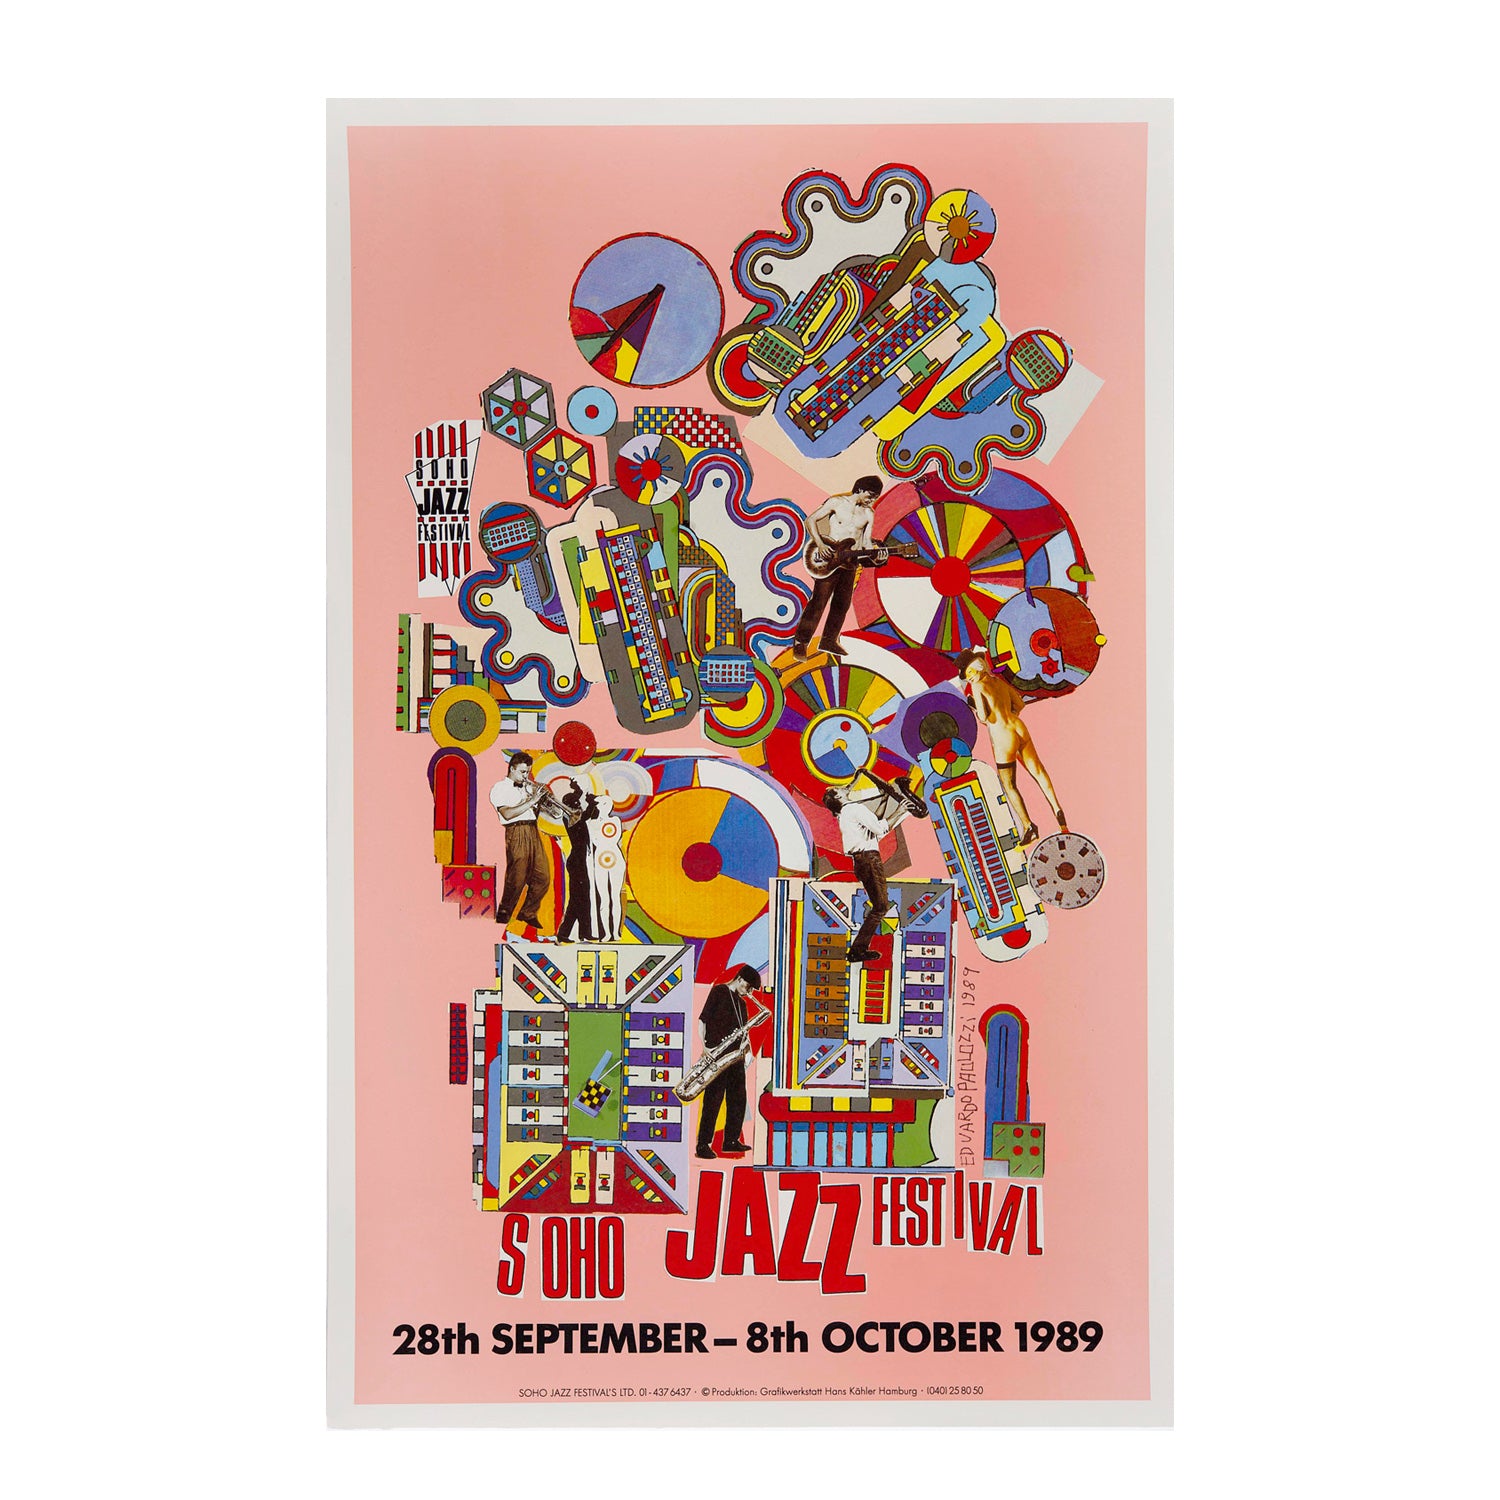 original poster for the 1989 Soho Jazz Festival designed by the ‘godfather’ of pop art, Eduardo Paolozzi. 